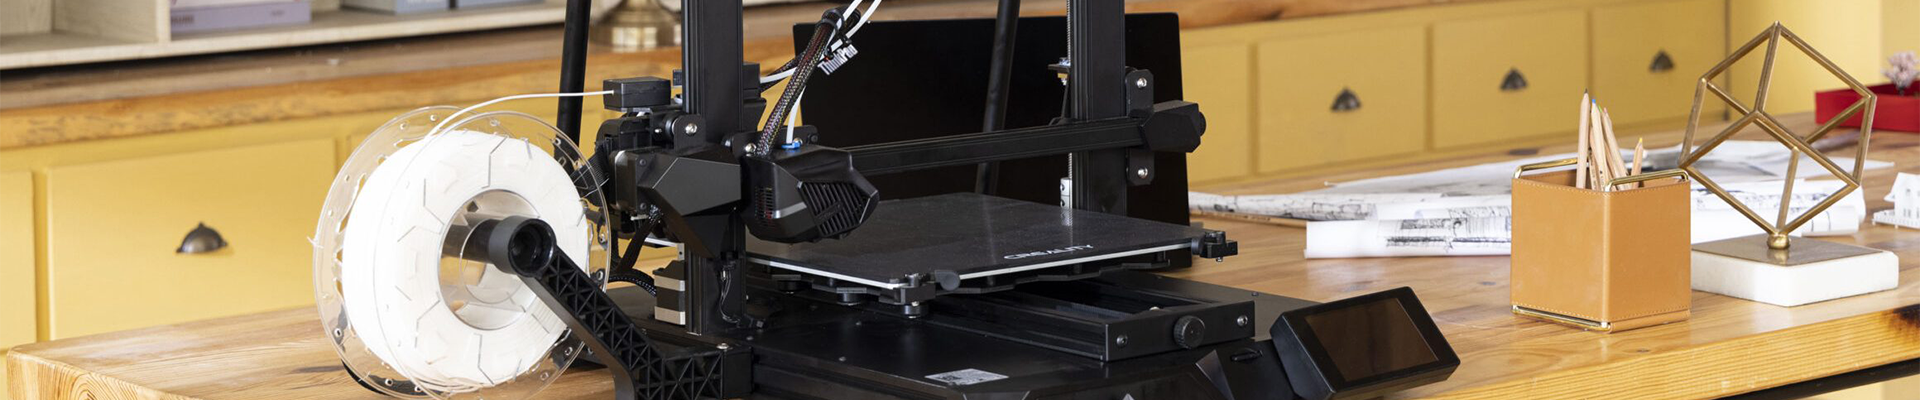 Large 3D printer 2023: BIG volumes starting at